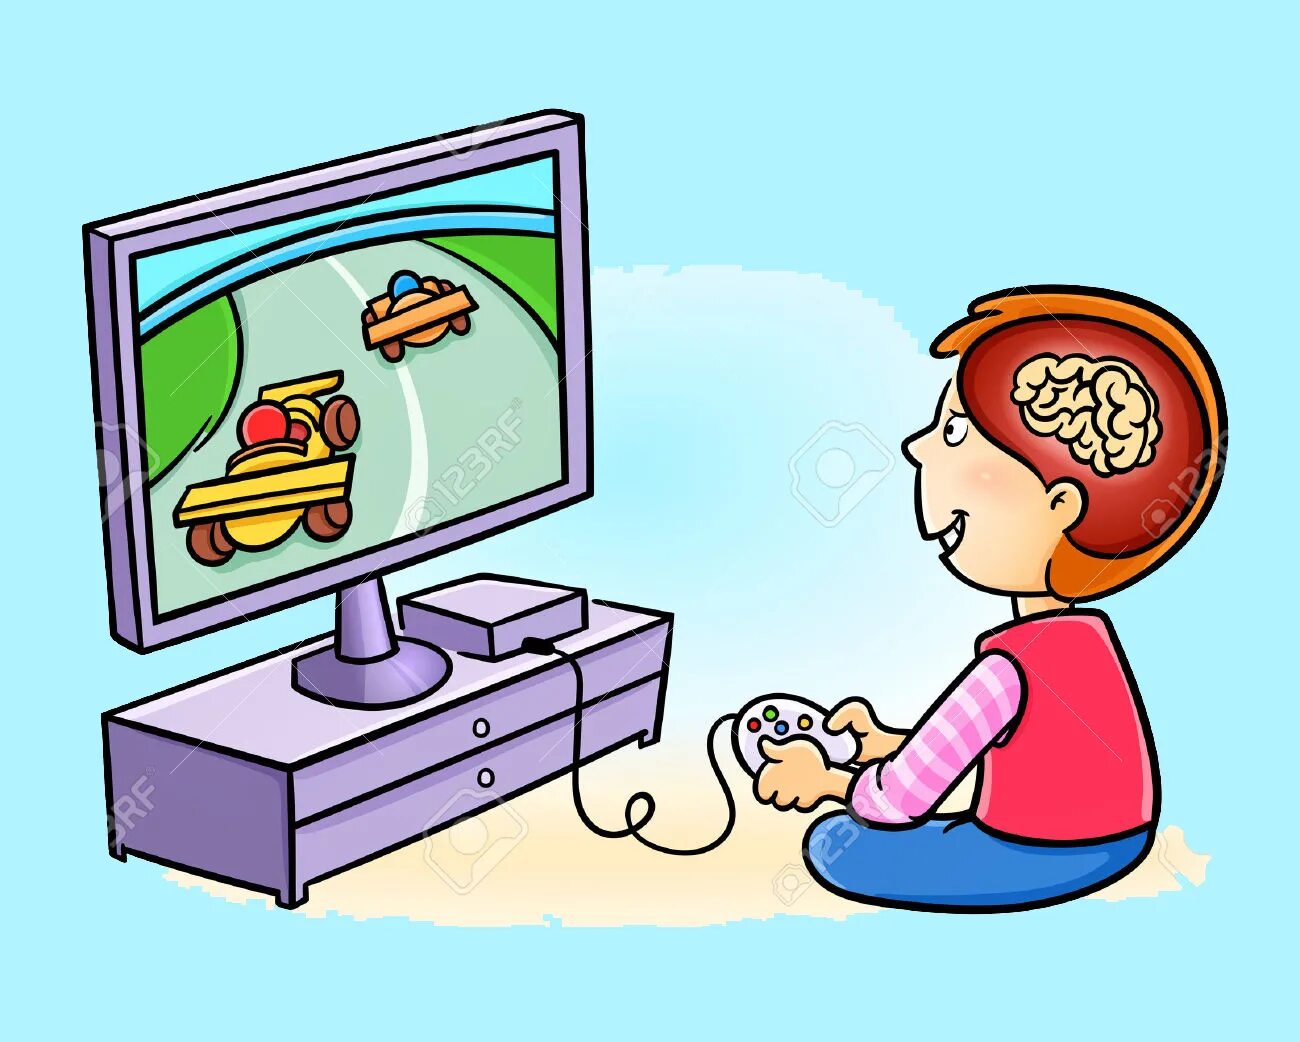 He playing computer games. Компьютерные игры картинки для детей. Компьютер и телевизор мультяшные. Игровой компьютер мультяшный. Телевизор и компьютер рисунок.